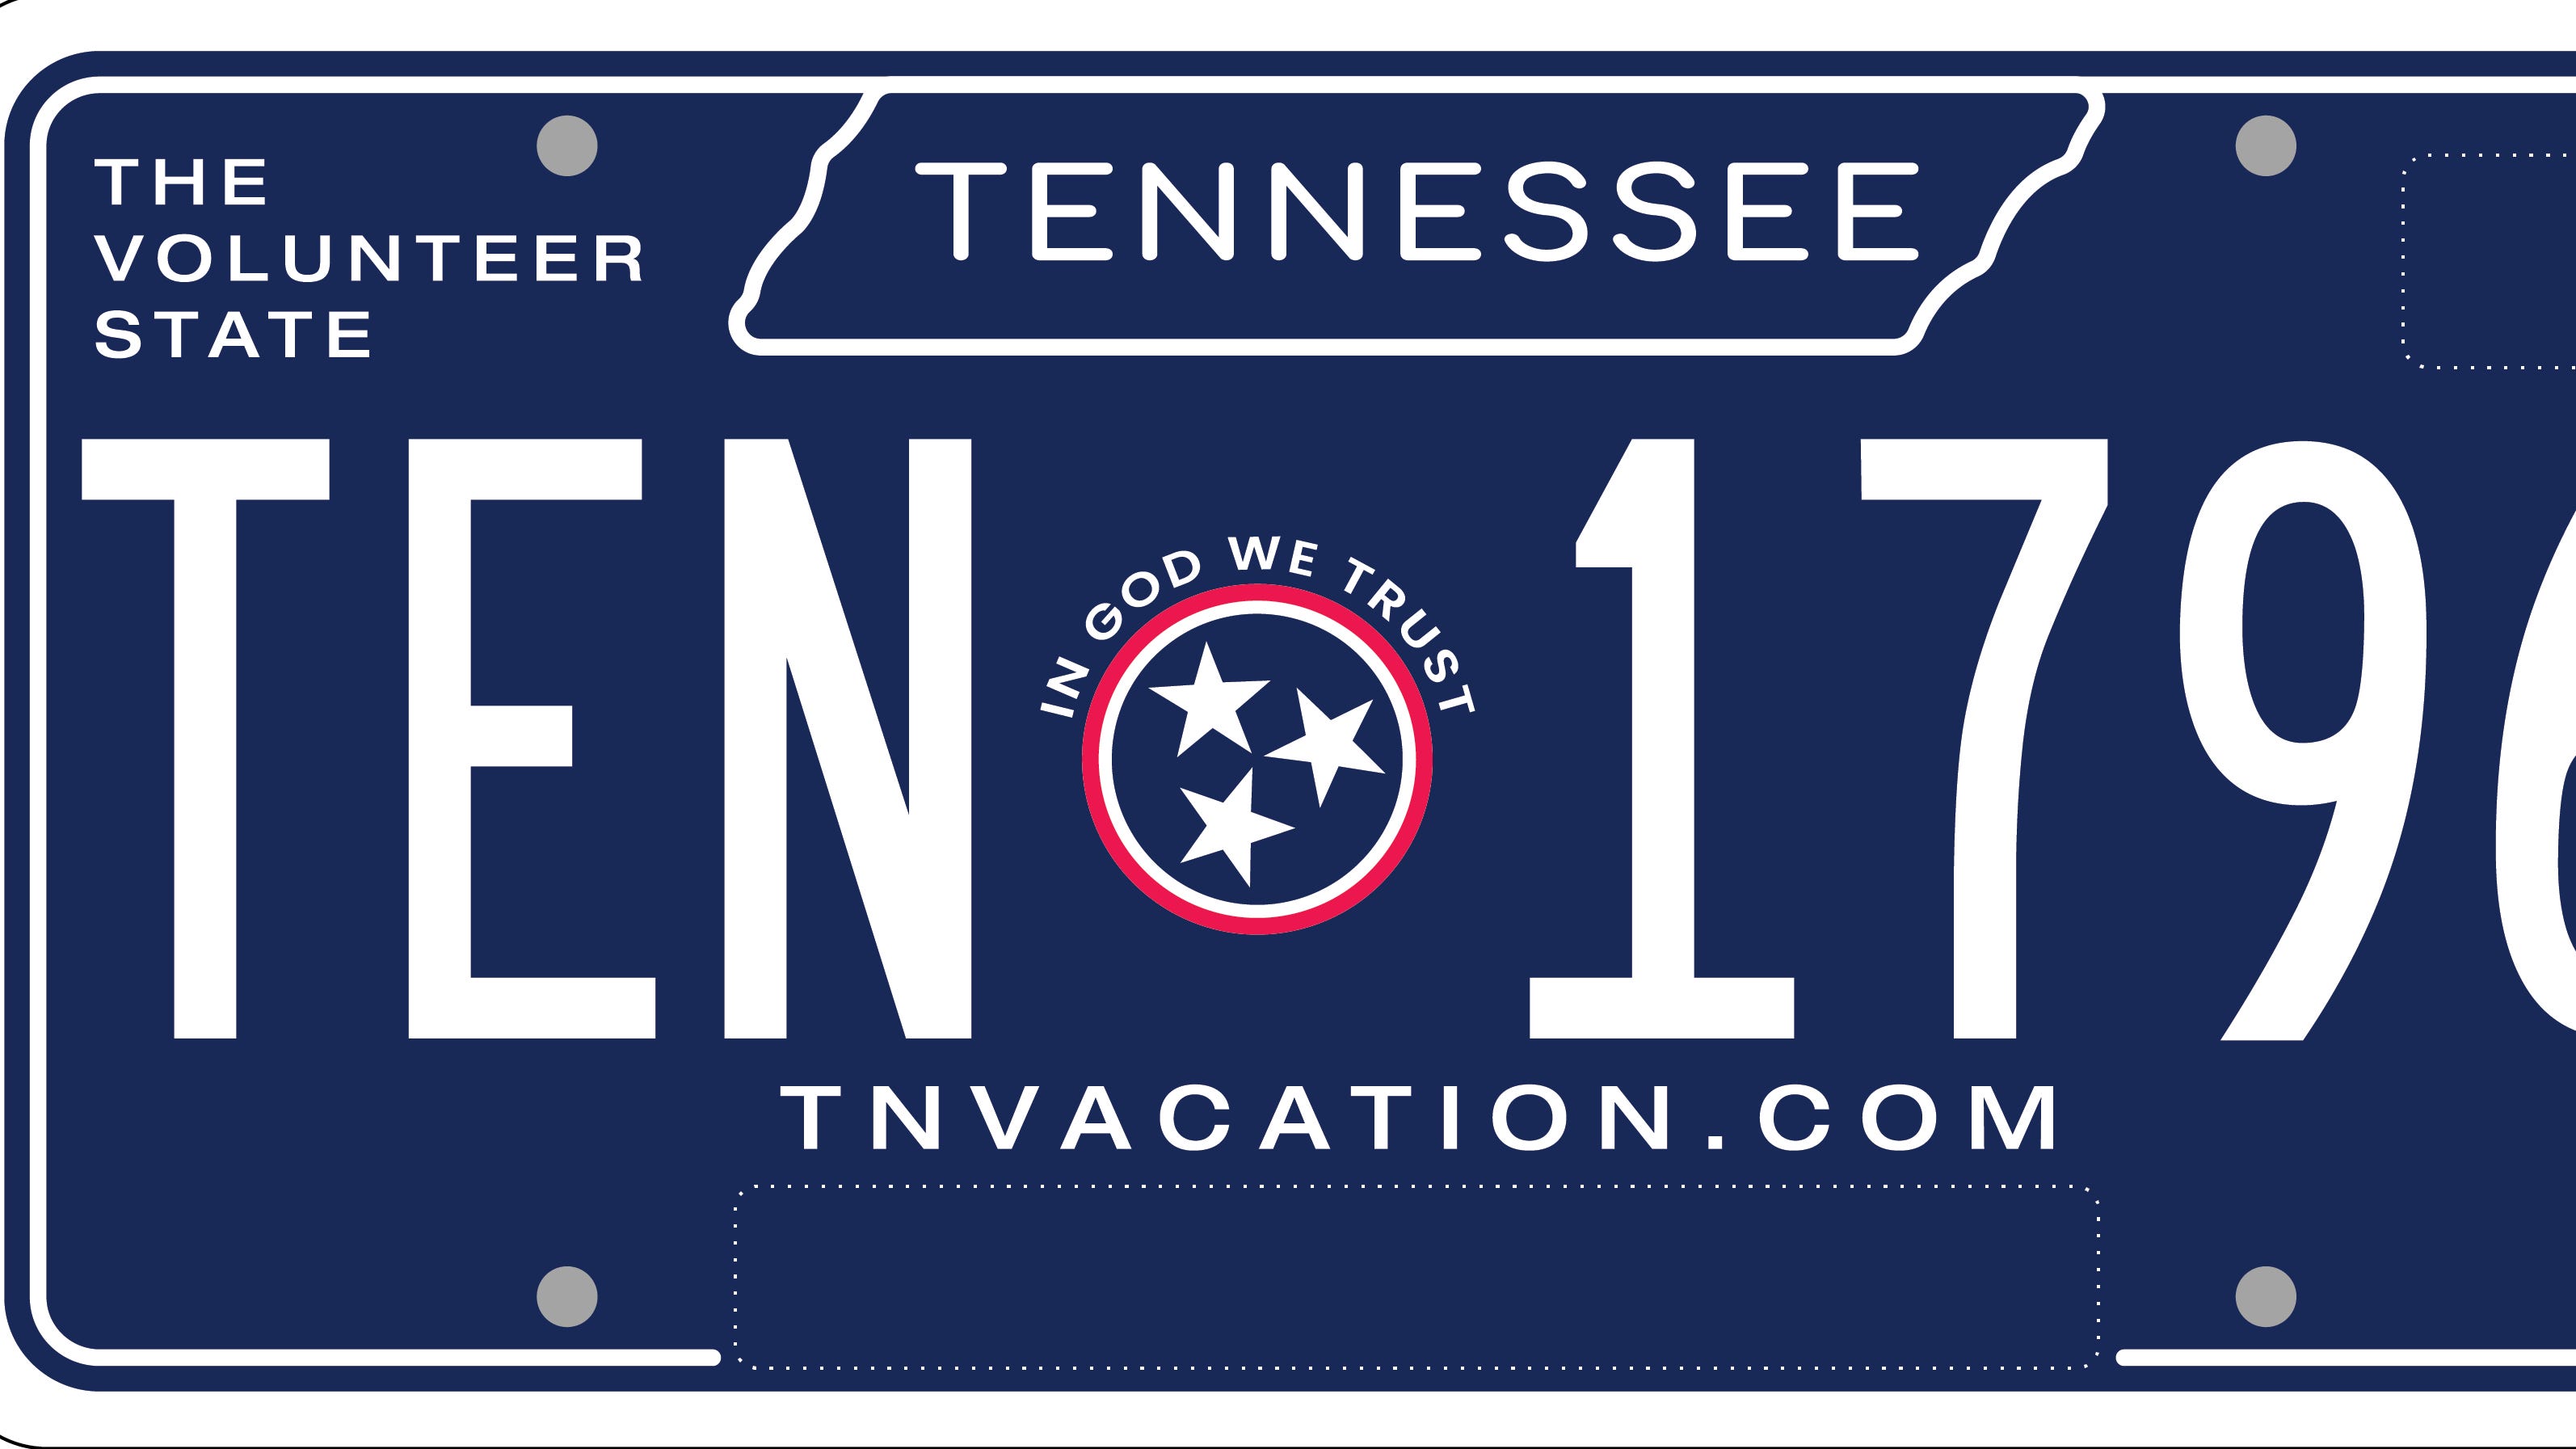 Tennessee thiết kế mẫu biển số mới màu xanh: Bạn muốn thay đổi mẫu biển số trên chiếc xe của mình để trông độc đáo hơn? Tennessee đã thiết kế mẫu biển số mới với gam màu xanh nam tính. Bạn sẽ không chỉ sở hữu một chiếc xe đẹp và tiện lợi mà còn là điểm nhấn thu hút sự chú ý trên đường phố. Hãy cập nhật ngay nhé!